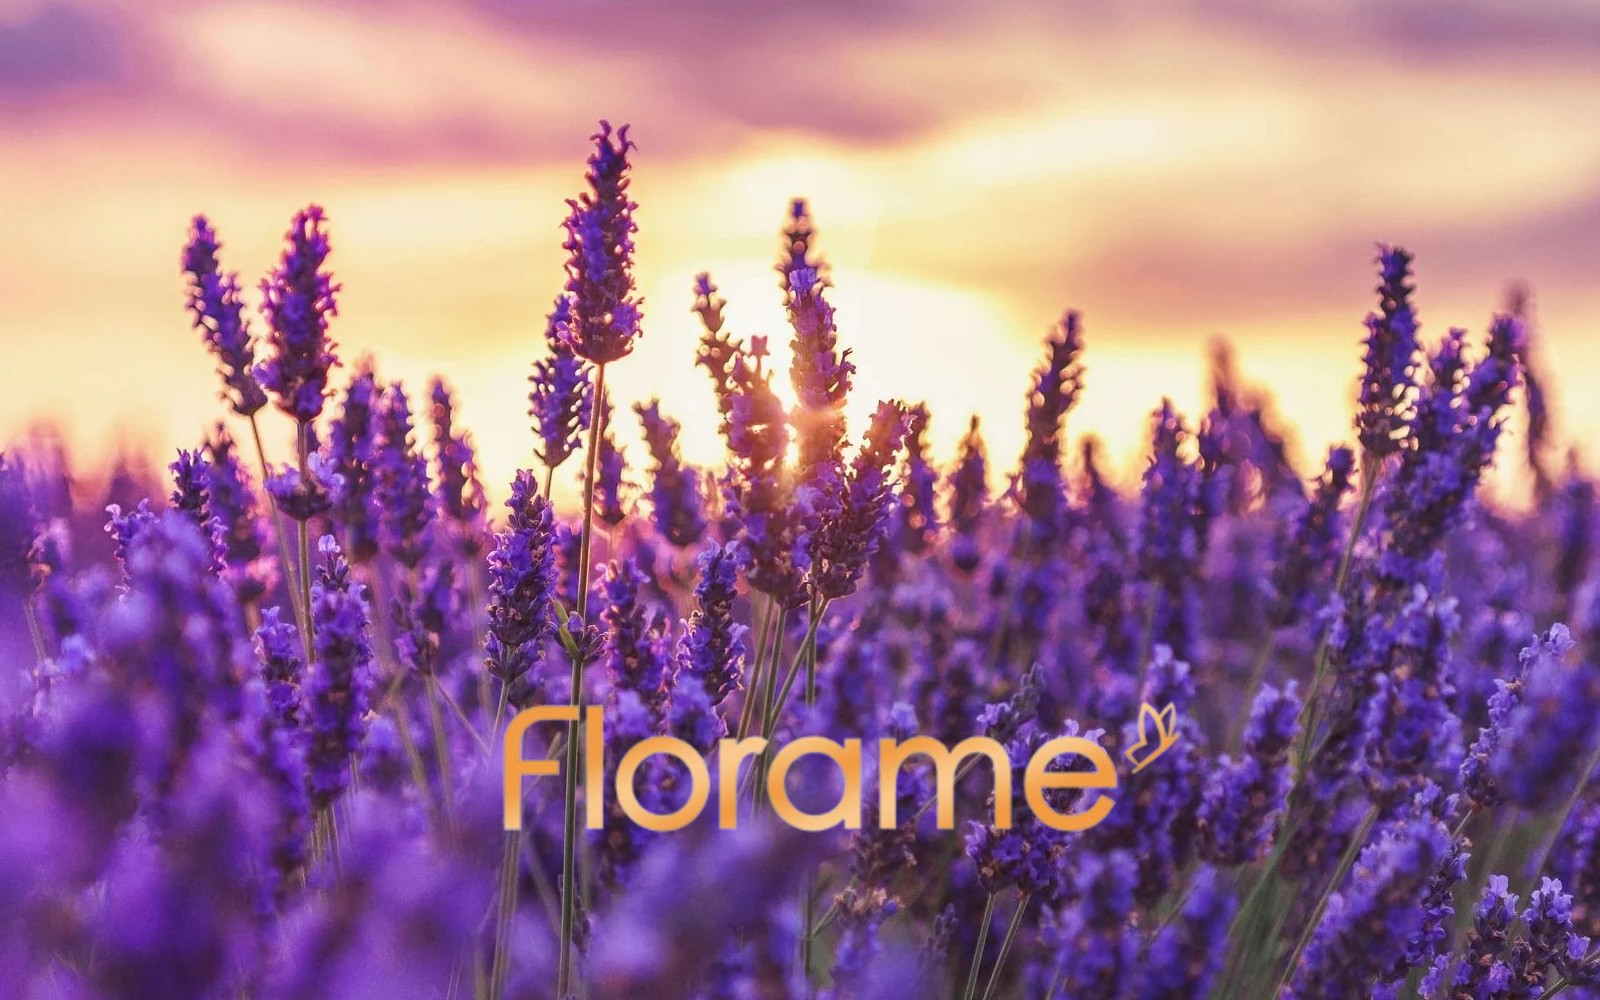 Florame - AROMATHERAPY